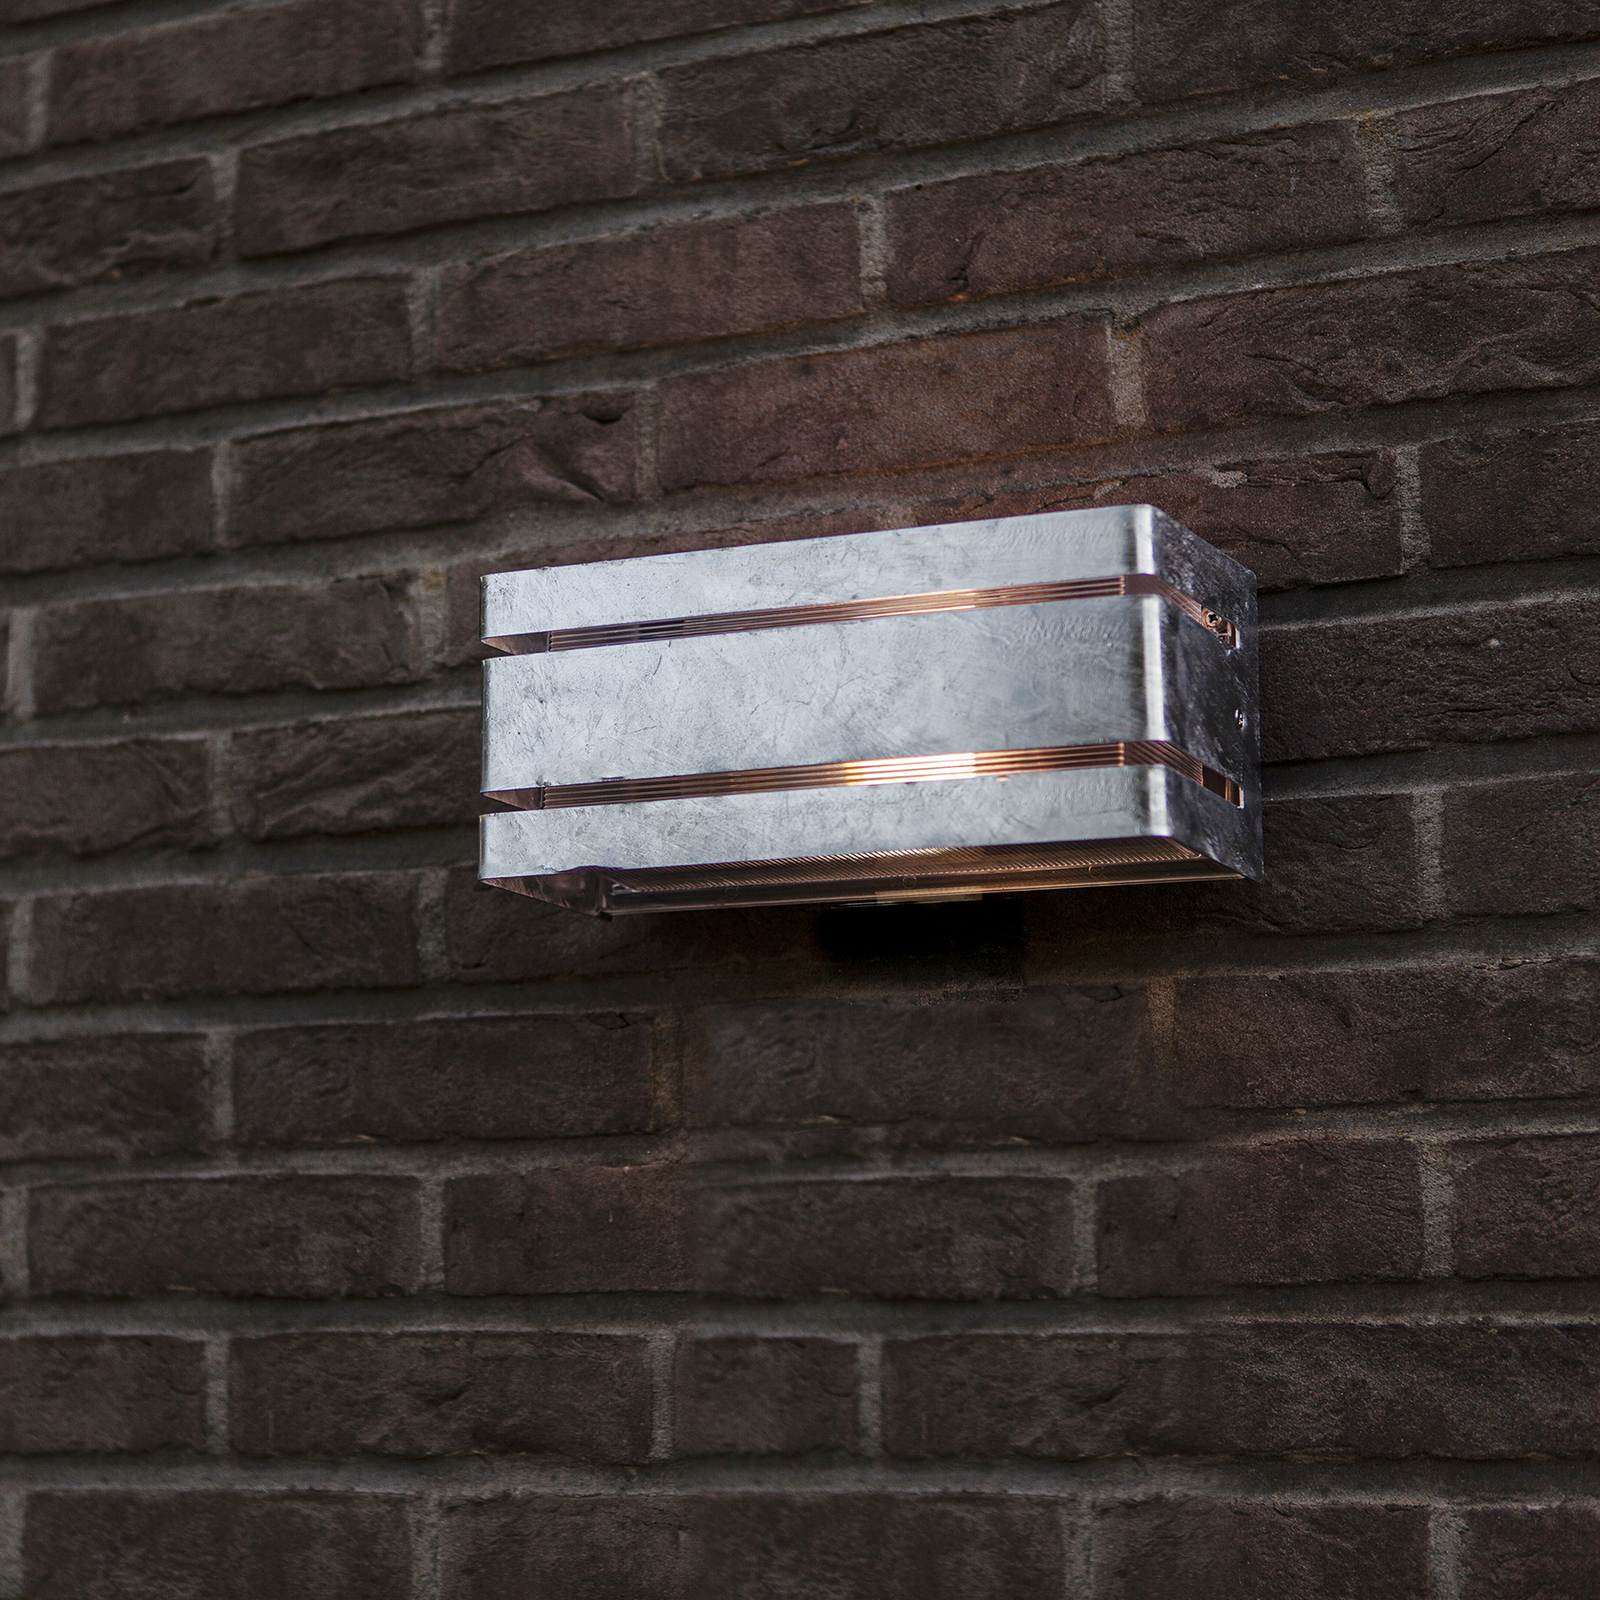 Vidar outdoor wall light, galvanized housing